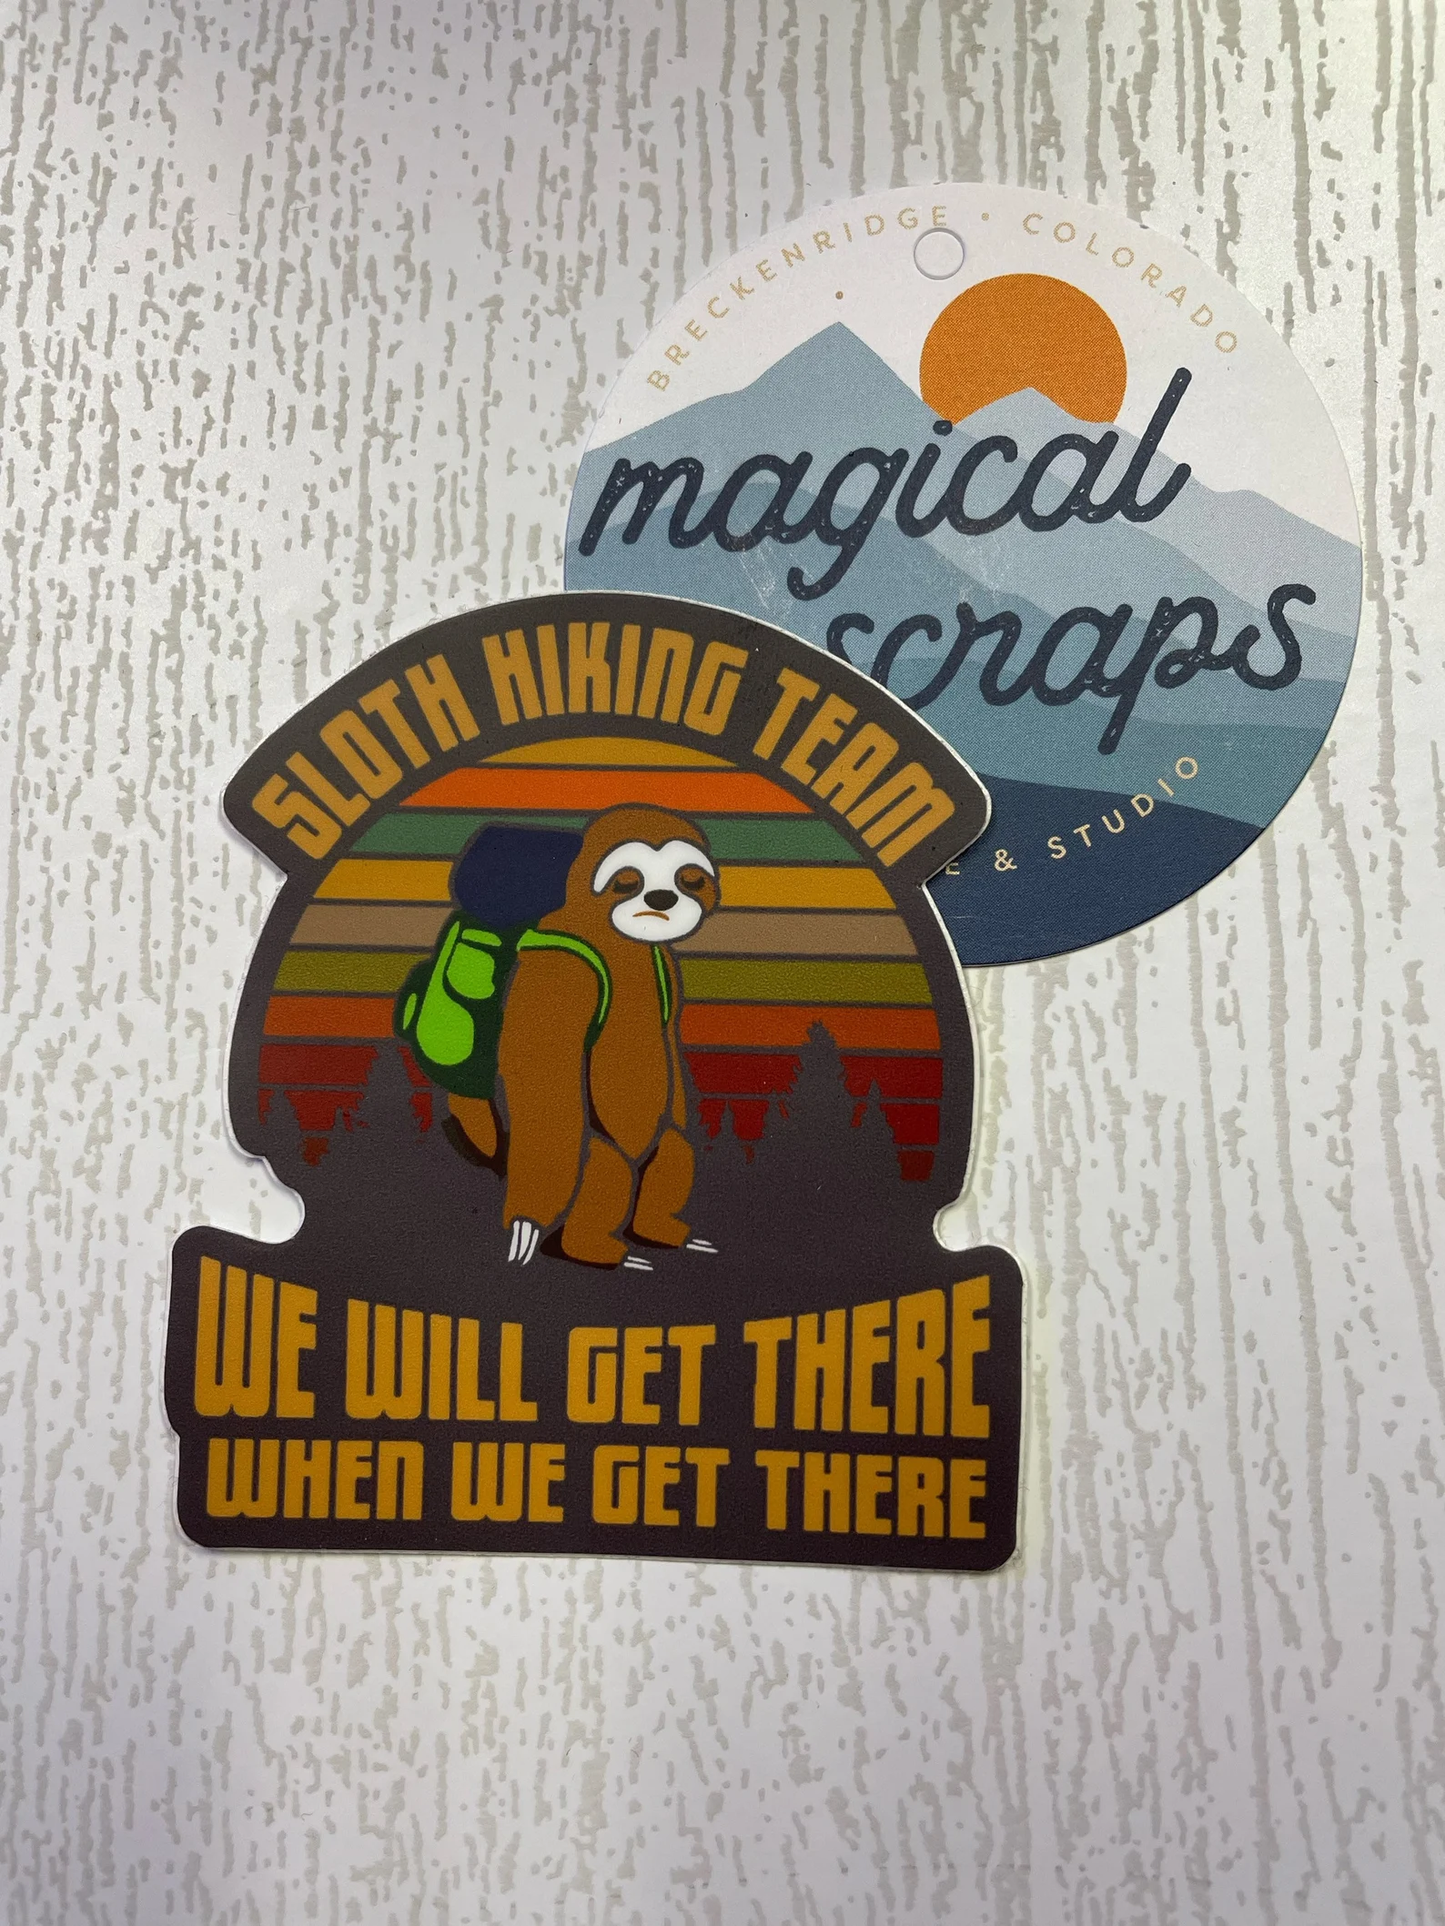 Vinyl Sticker - Sloth Hiking Team- Waterproof Decal